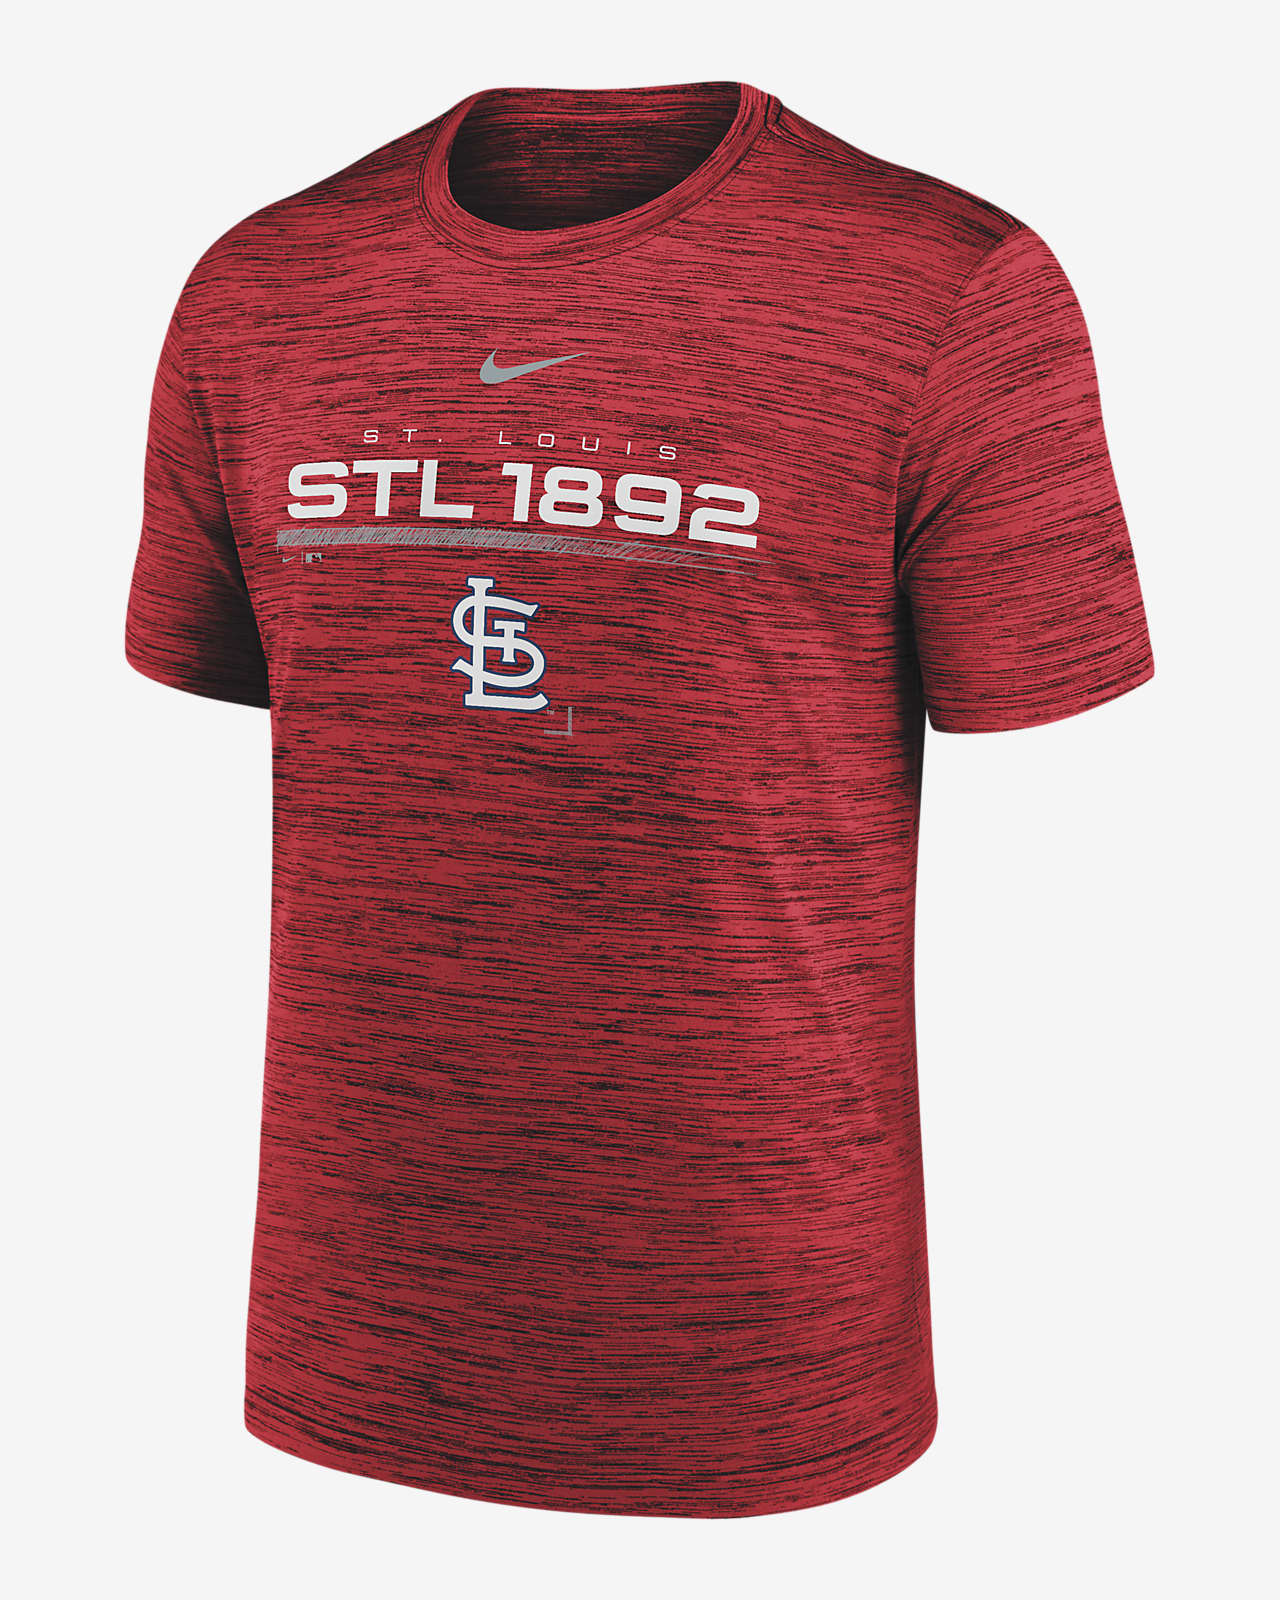 St. Louis cardinals tshirt  Clothes design, Mens tops, Mens tshirts